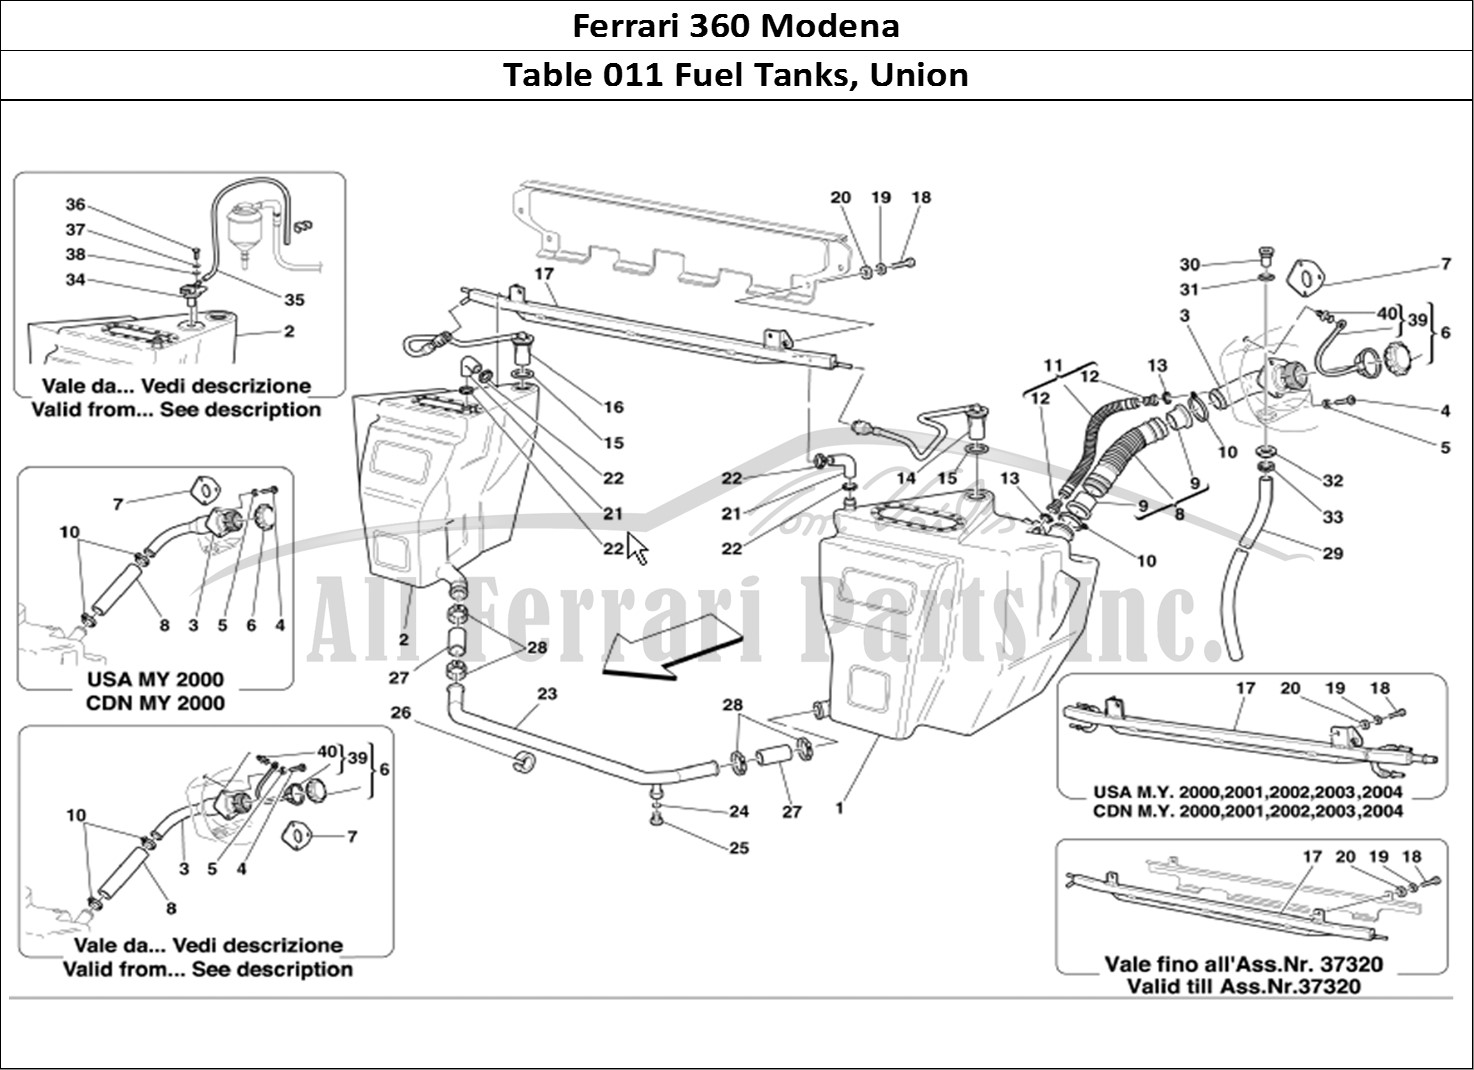 Ferrari Parts Ferrari 360 Modena Page 011 Fuel Tanks and Union